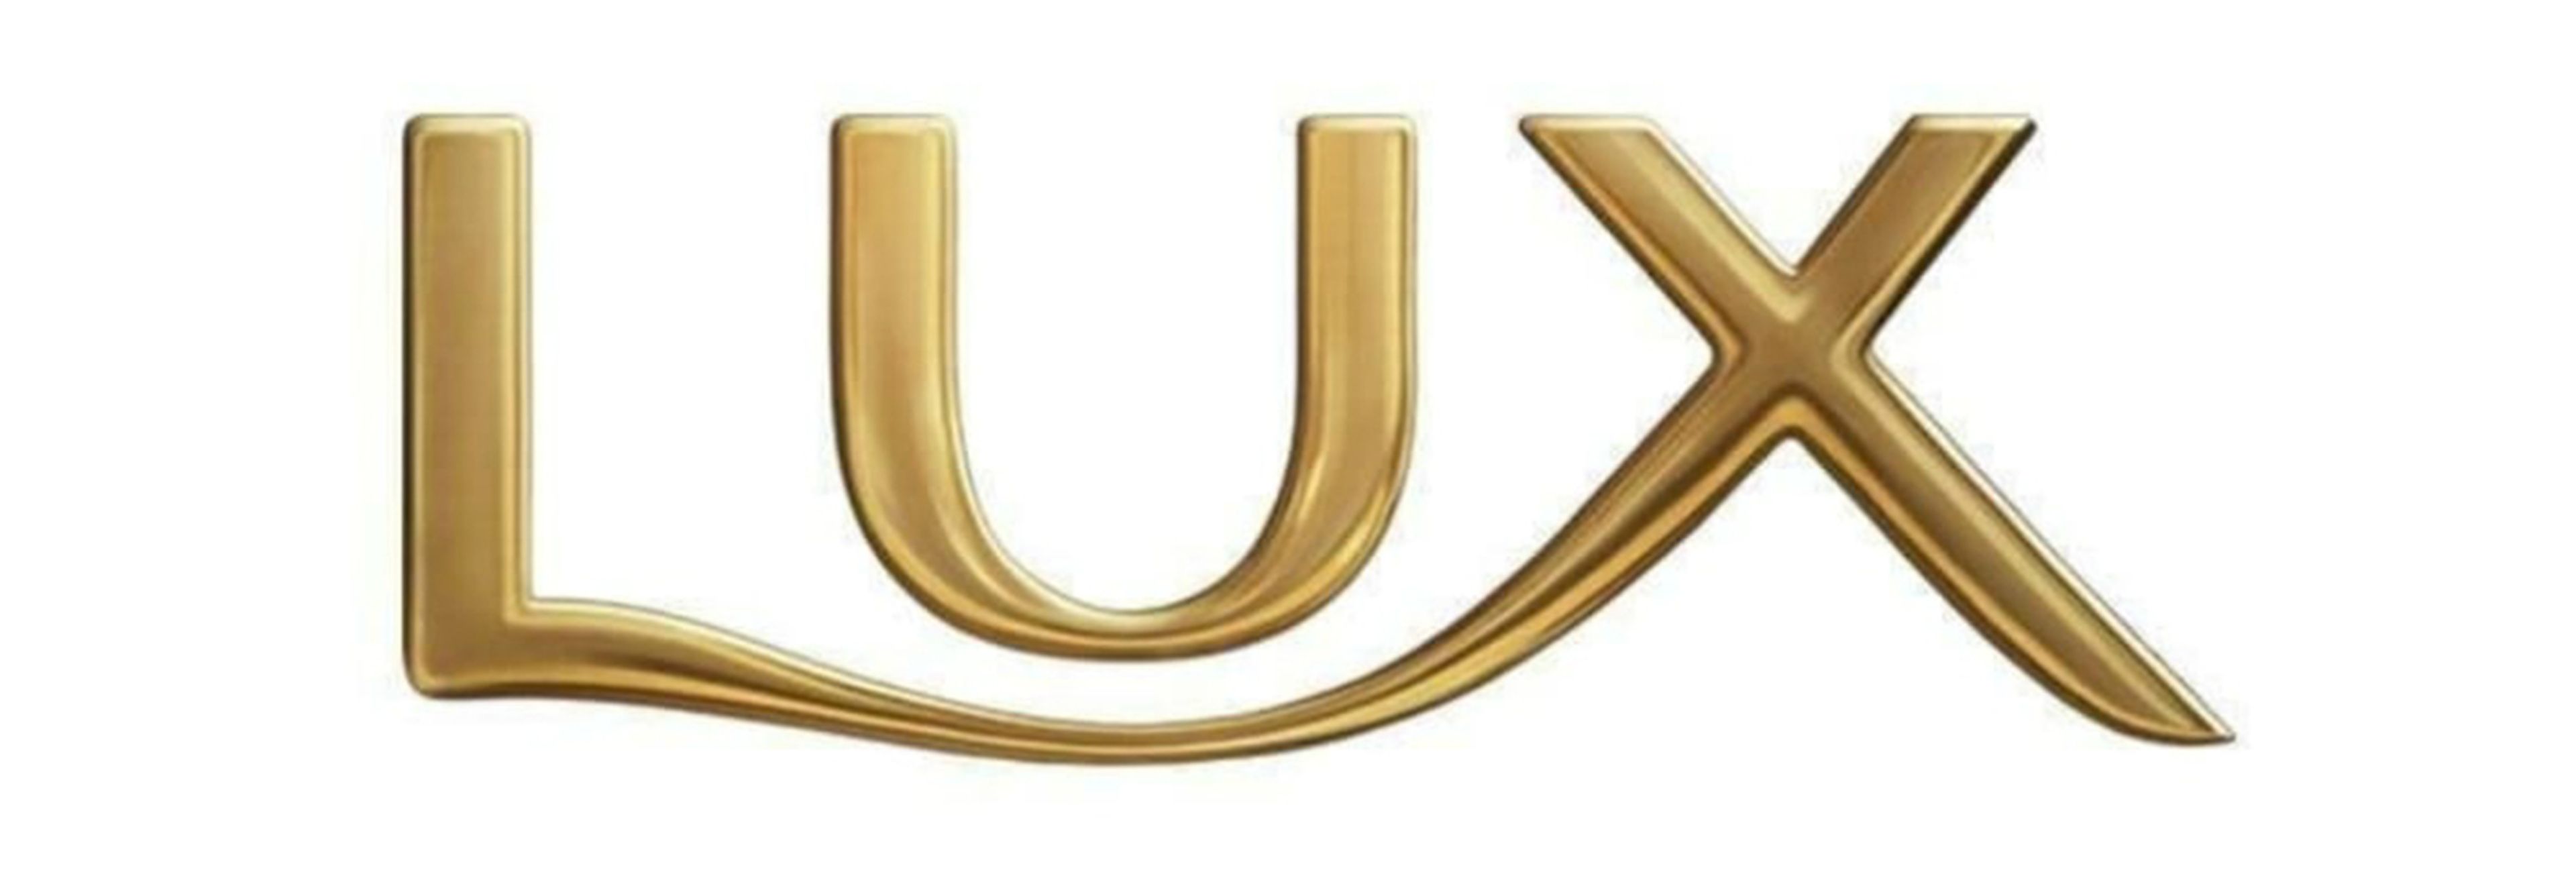 Lux es una marca británica de jabones y otros productos de belleza de la empresa Unilever, cuyos productos se venden en más de 100 países.